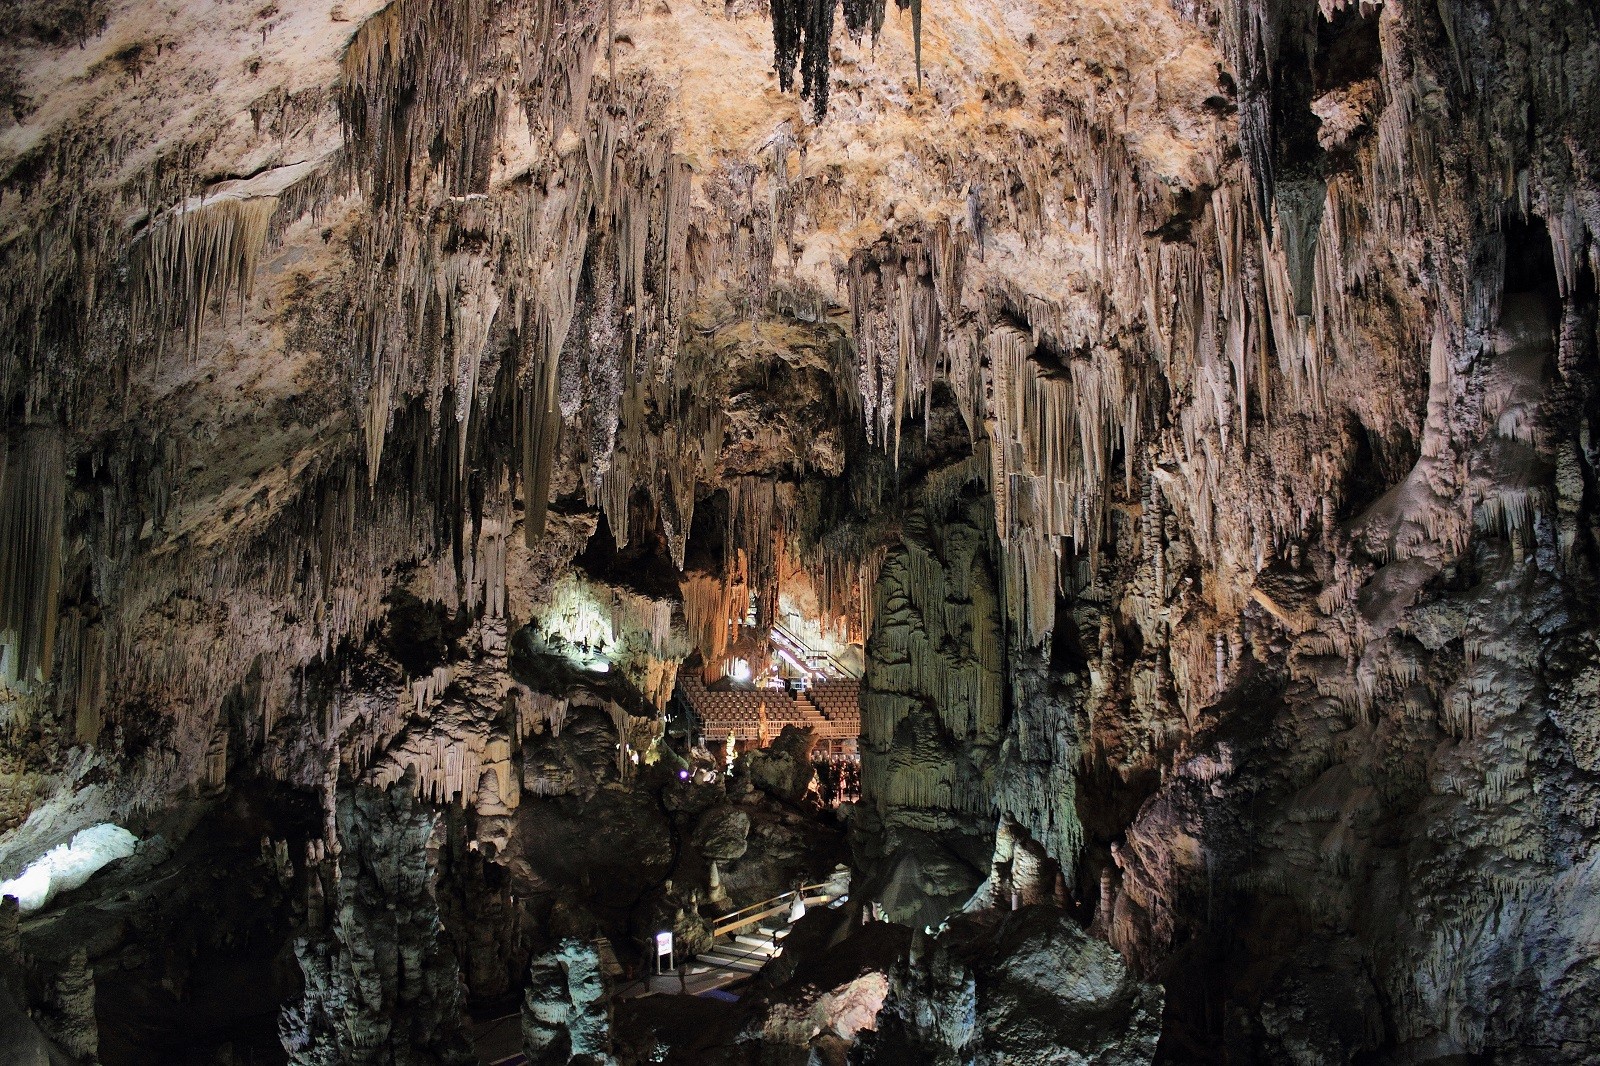 Ludzie odwiedzali tę jaskinię przez ponad 40 tysięcy lat. Jak z niej korzystano?